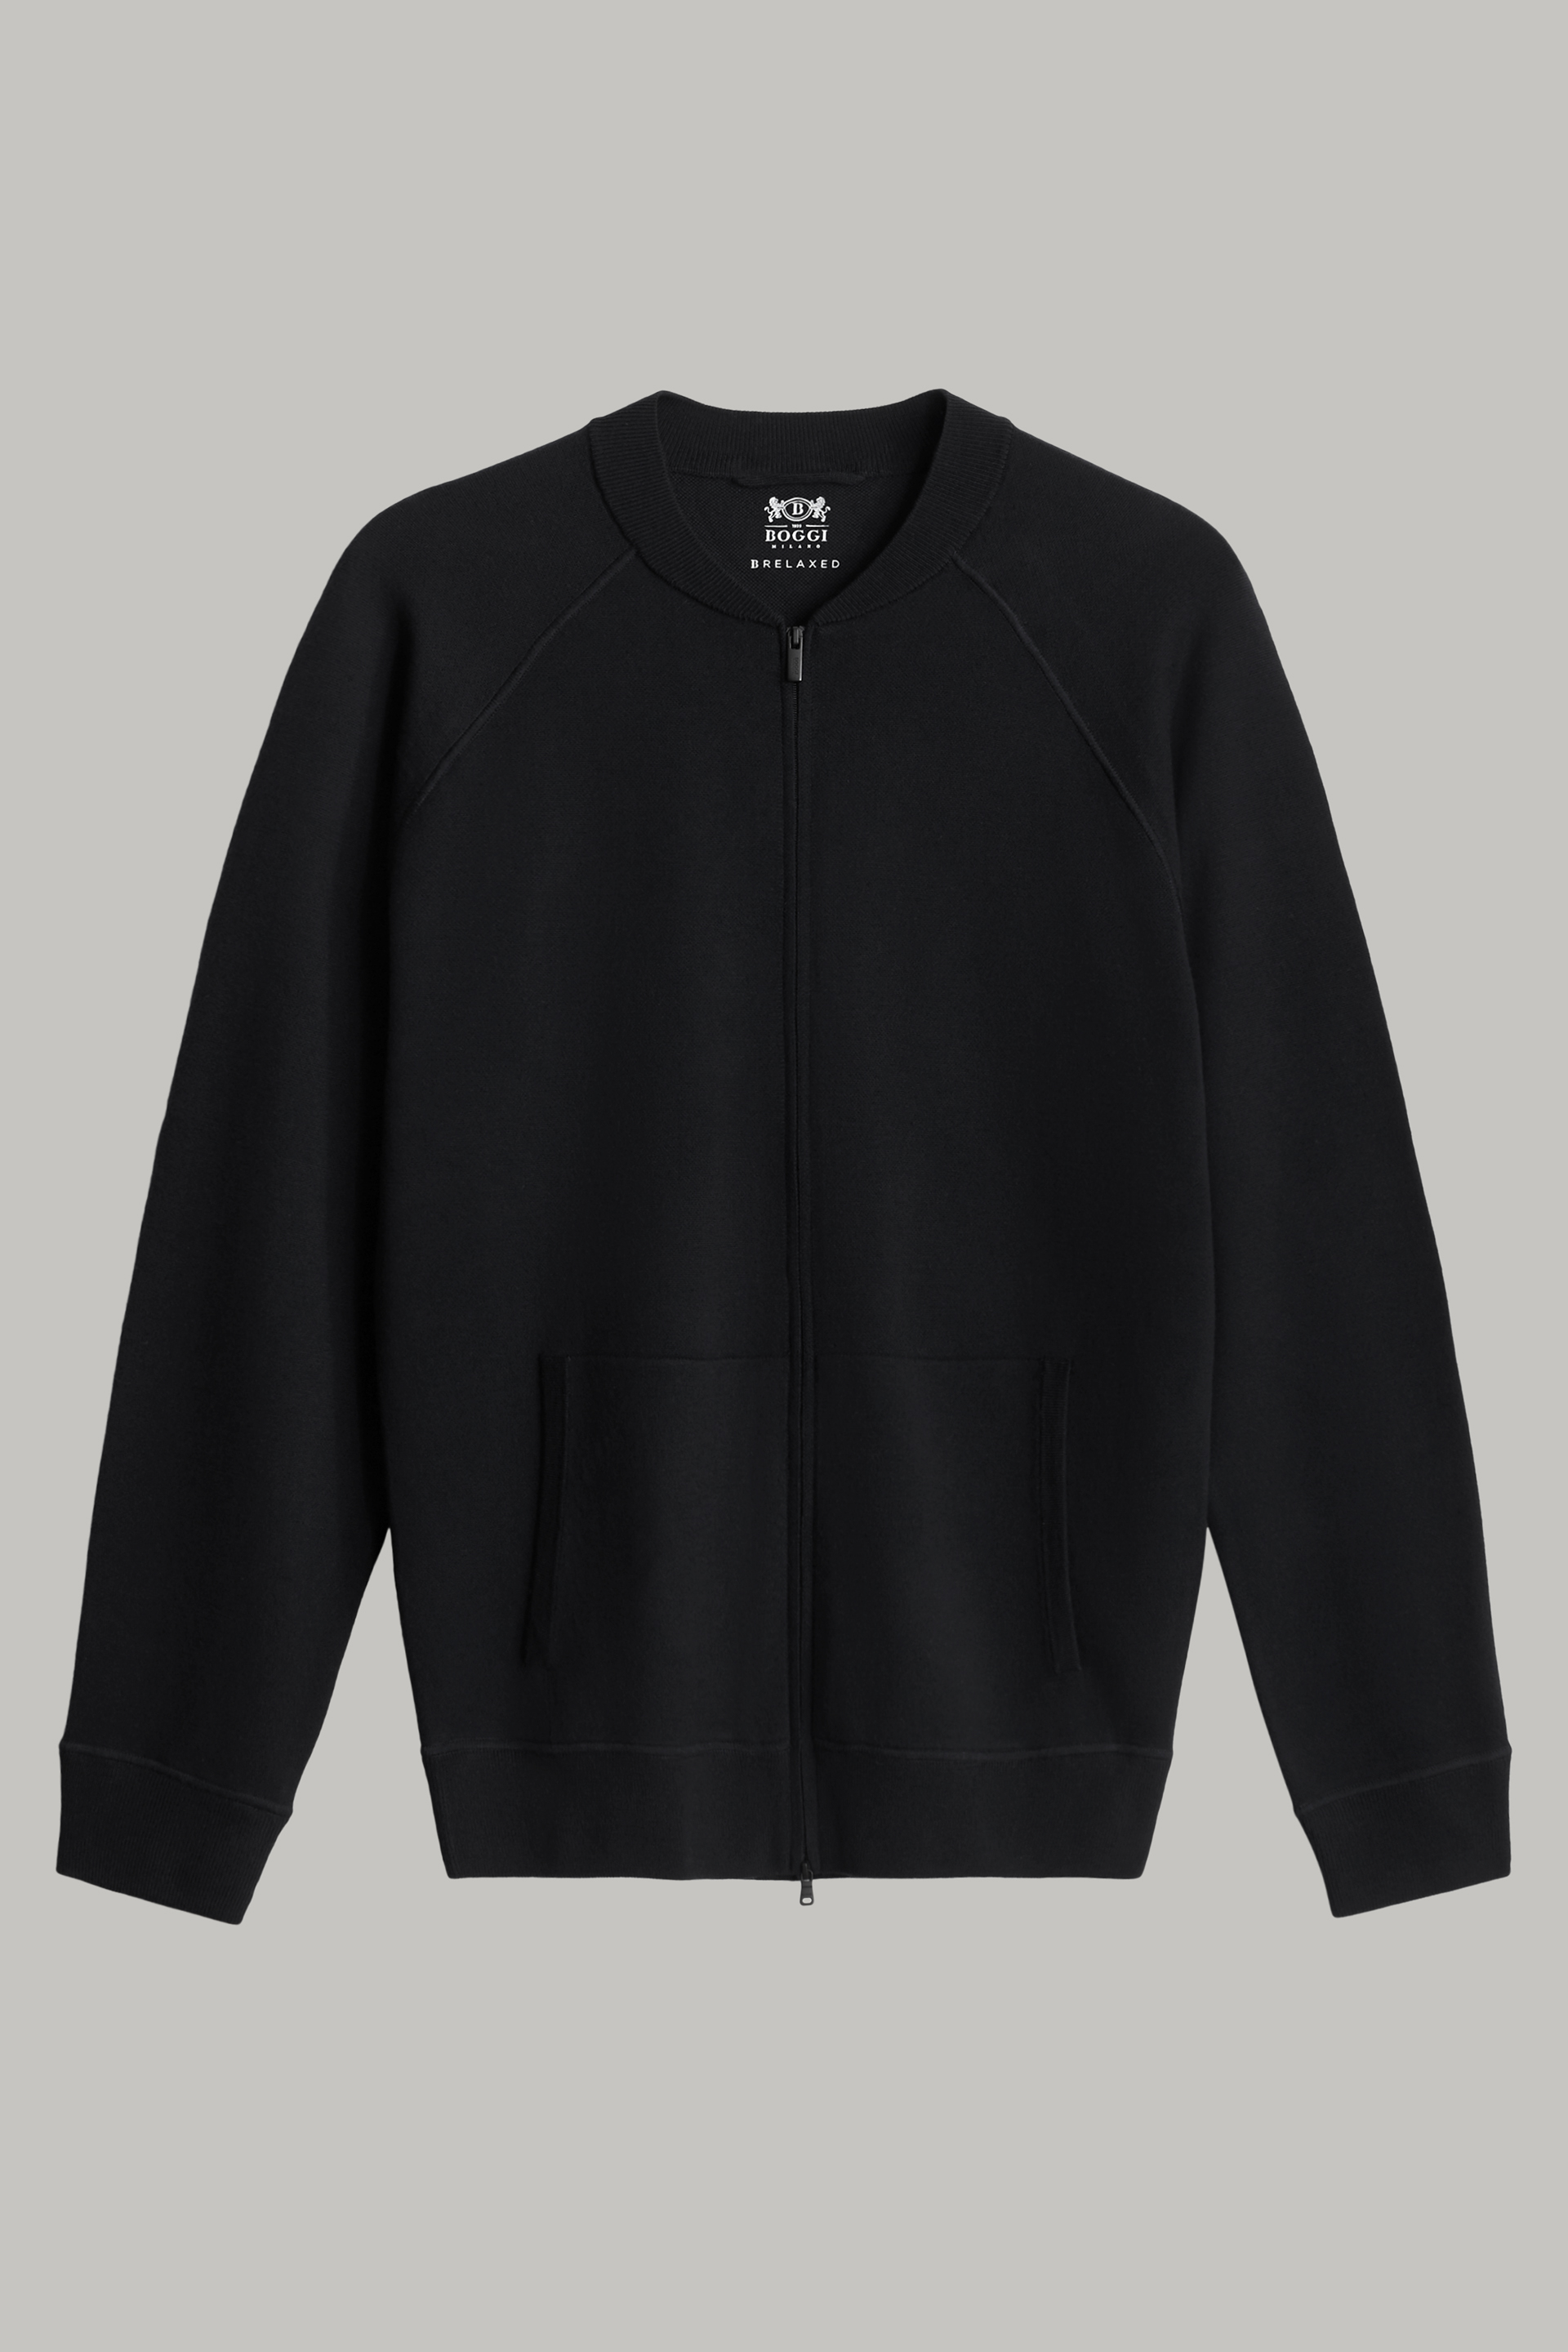 Men's Black merino wool knitted bomber jacket